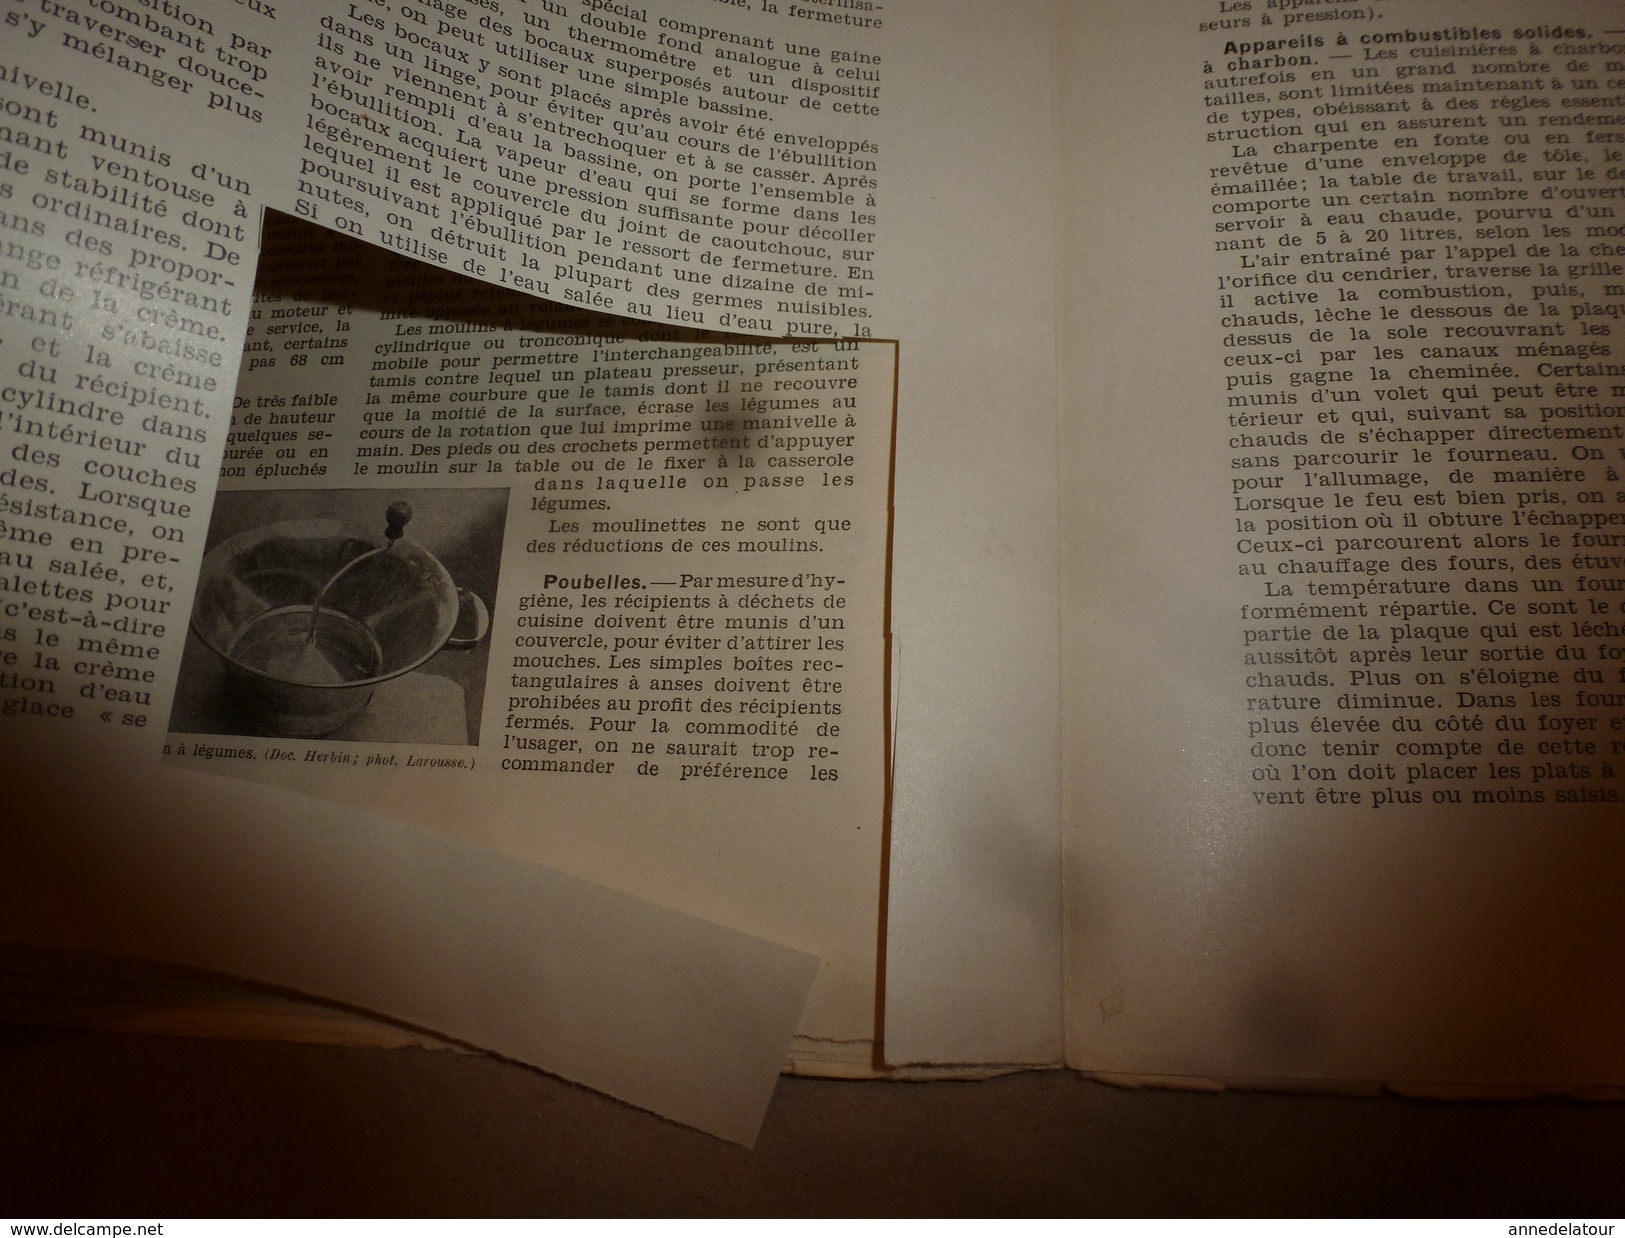 1950 ENCYCLOPEDIE FAMILIALE LAROUSSE ->Matériel ménager (très important documentaire texte,photos et dessins (2e partie)